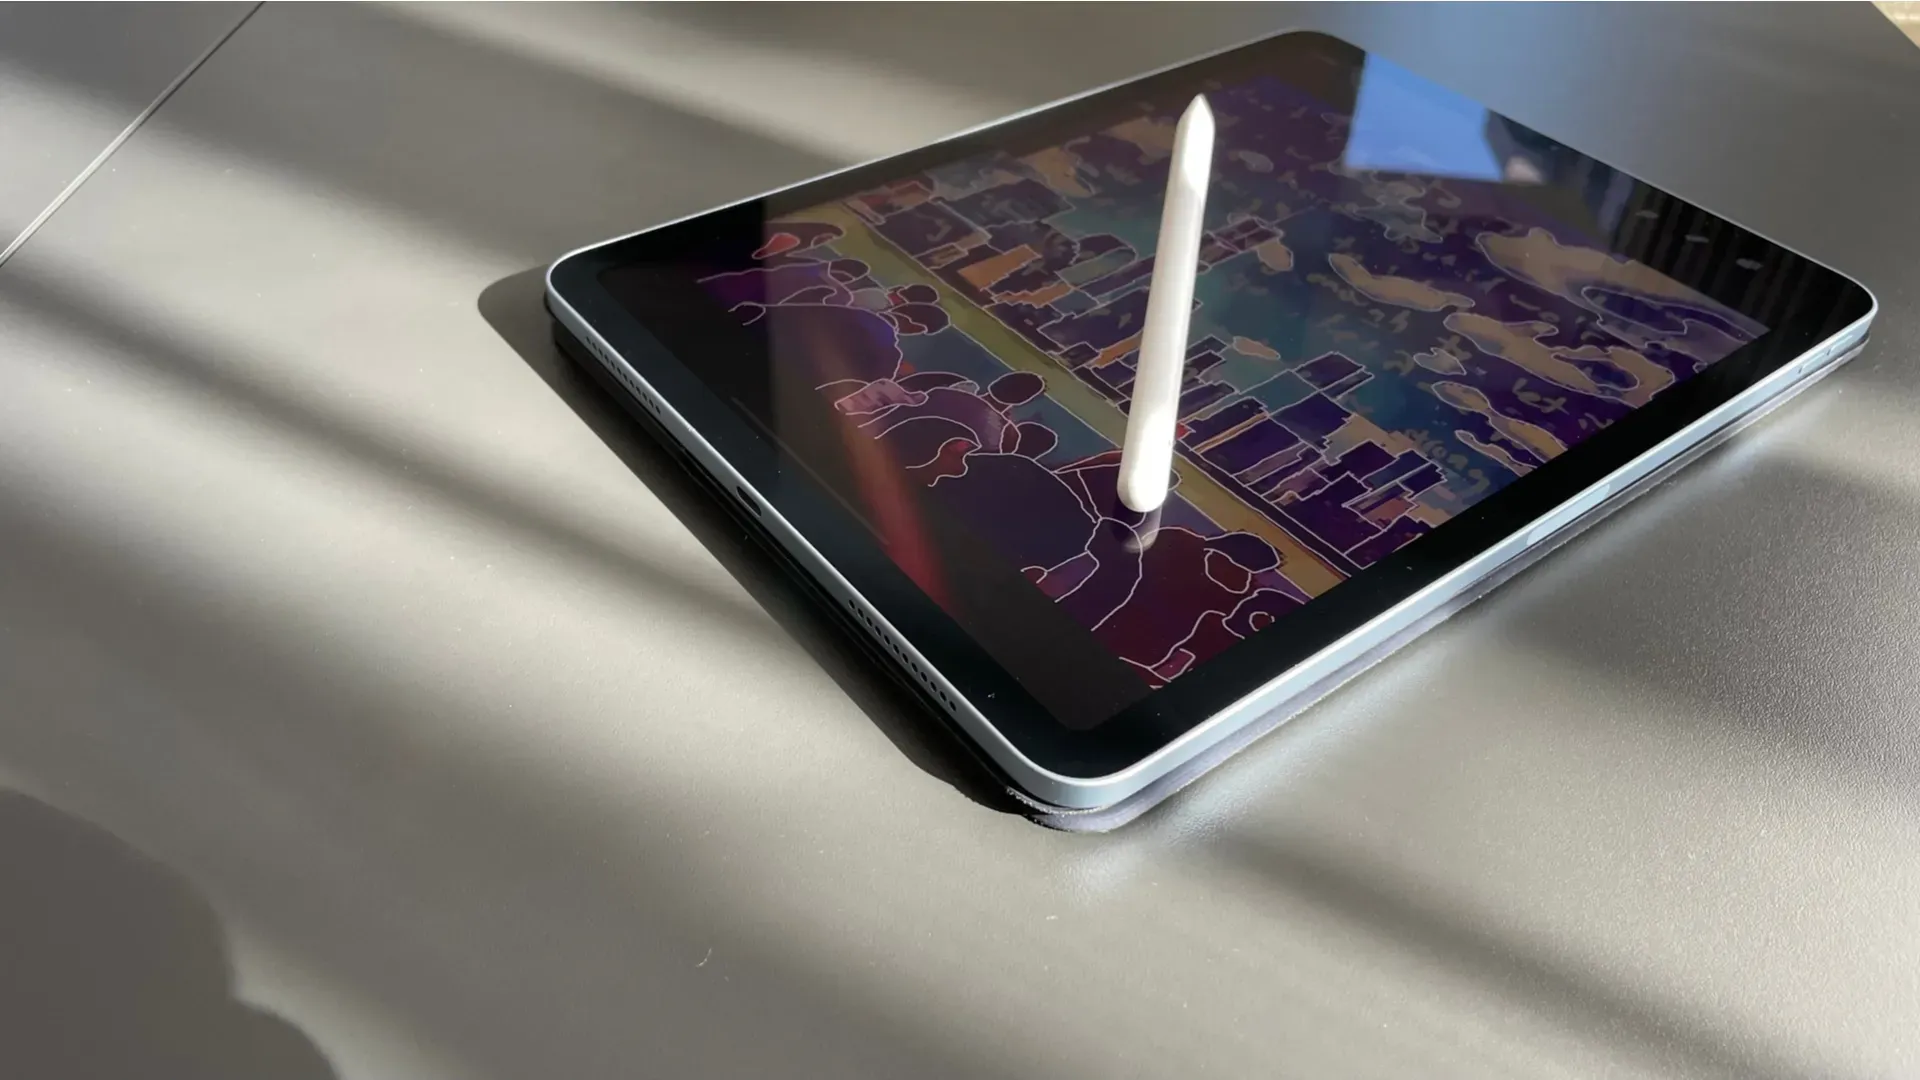 Detalhe do iPad Air 4ª geração sobre uma mesa, com um desenho e uma Apple Pencil na tela